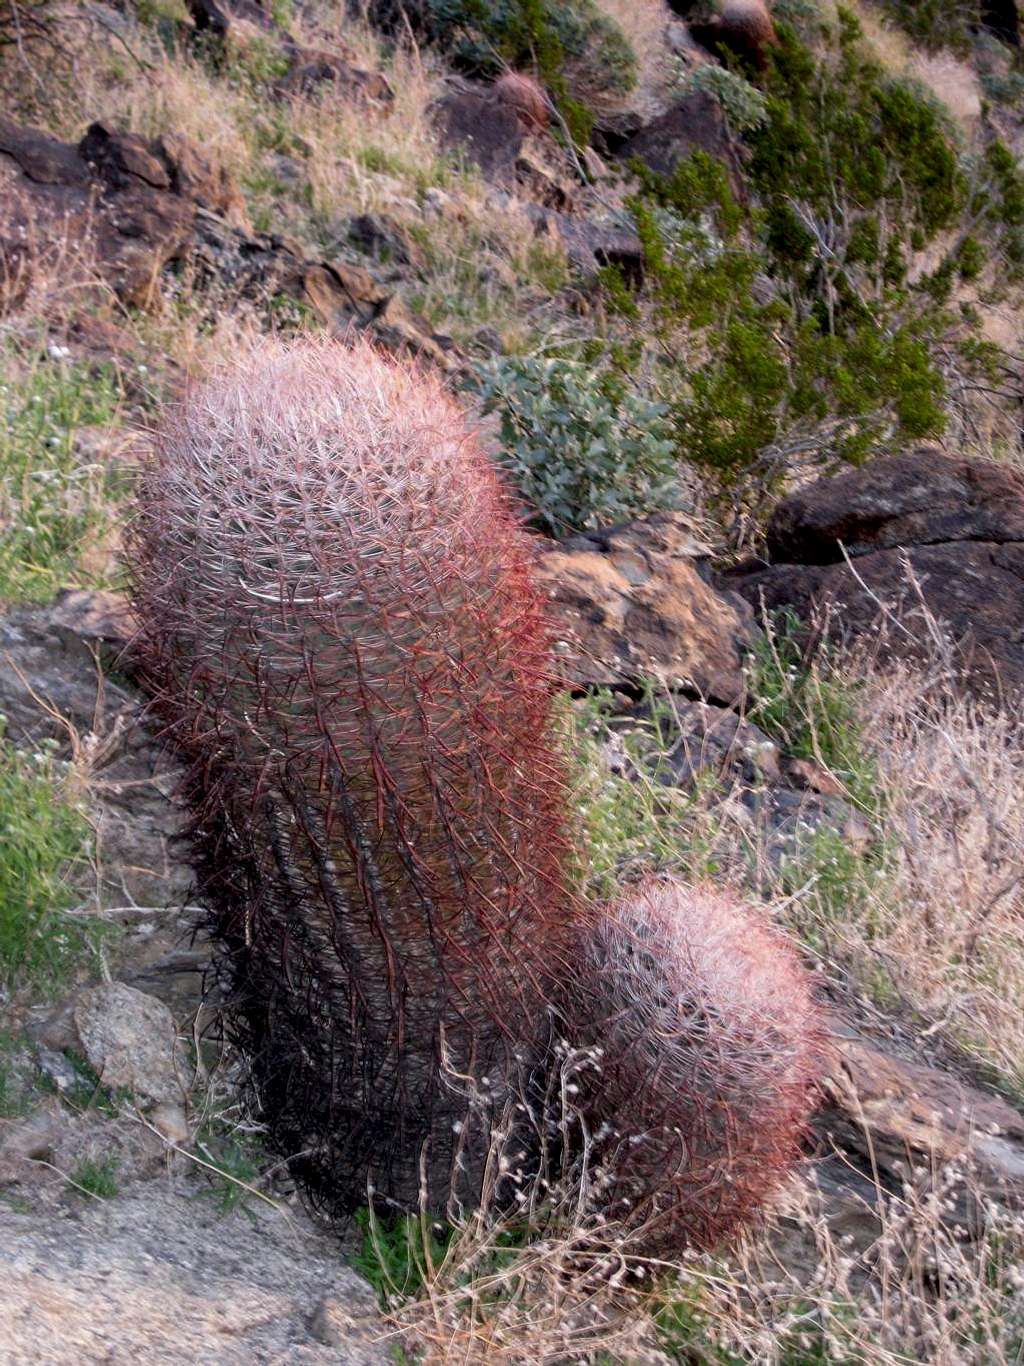 Savage cactus